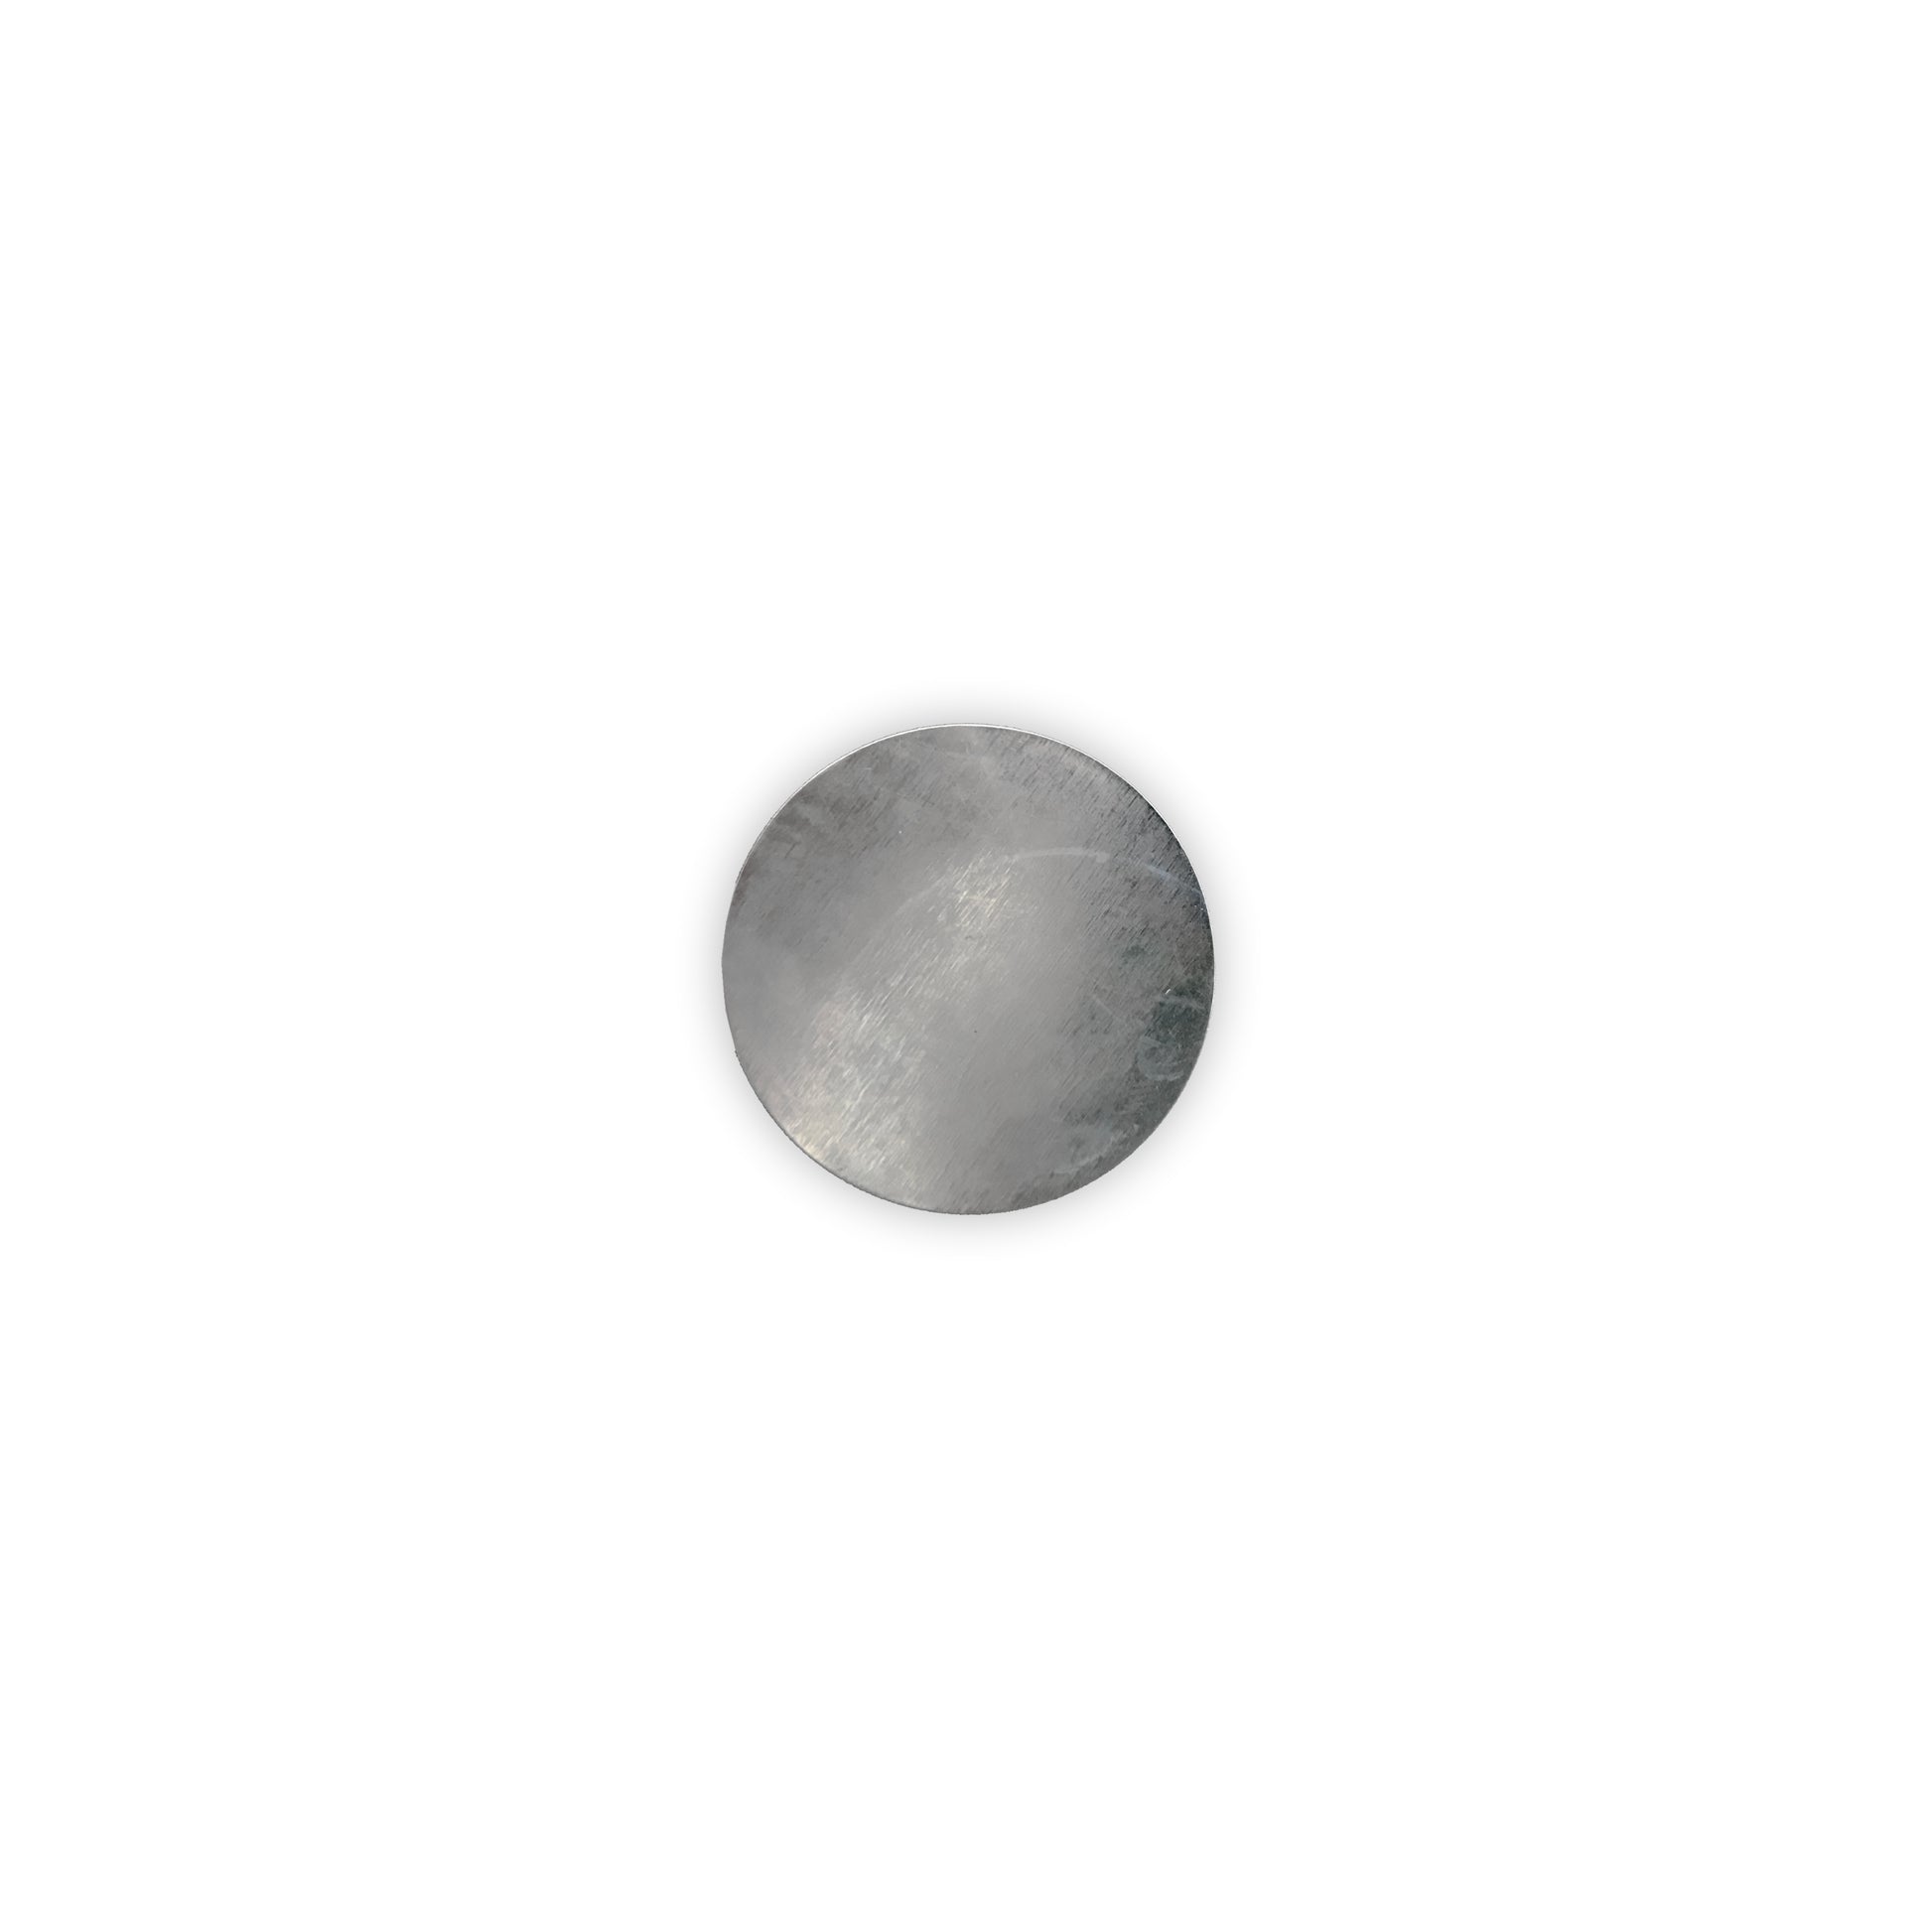 Metallronden - Durchmesser 21 mm